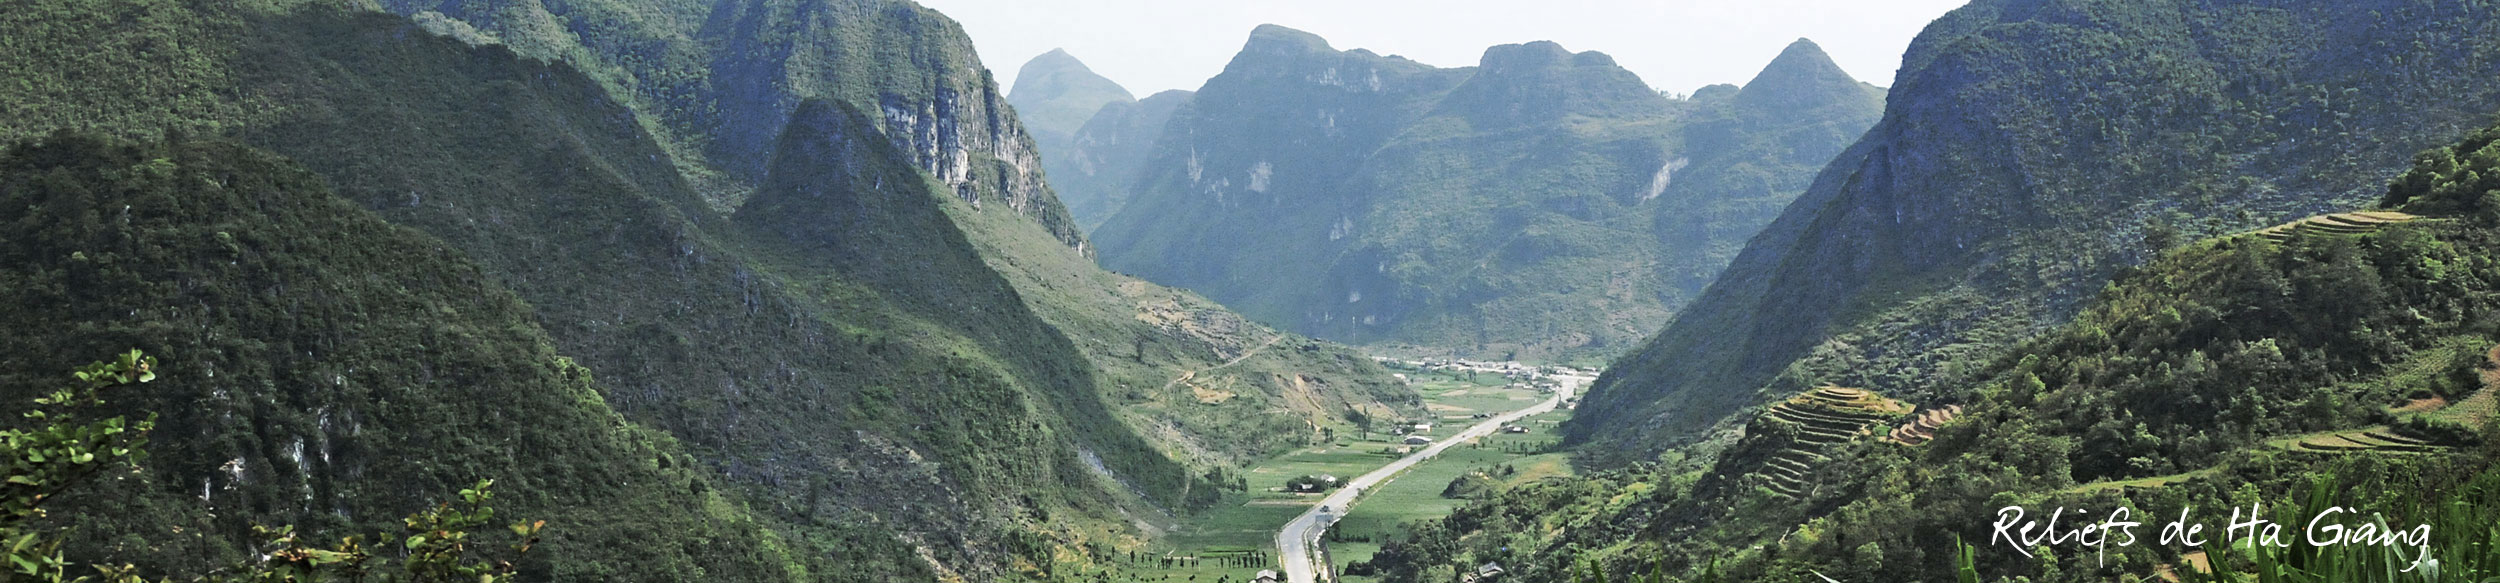 Les paysages à découvrir lors d'un voyage à Ha Giang à moto